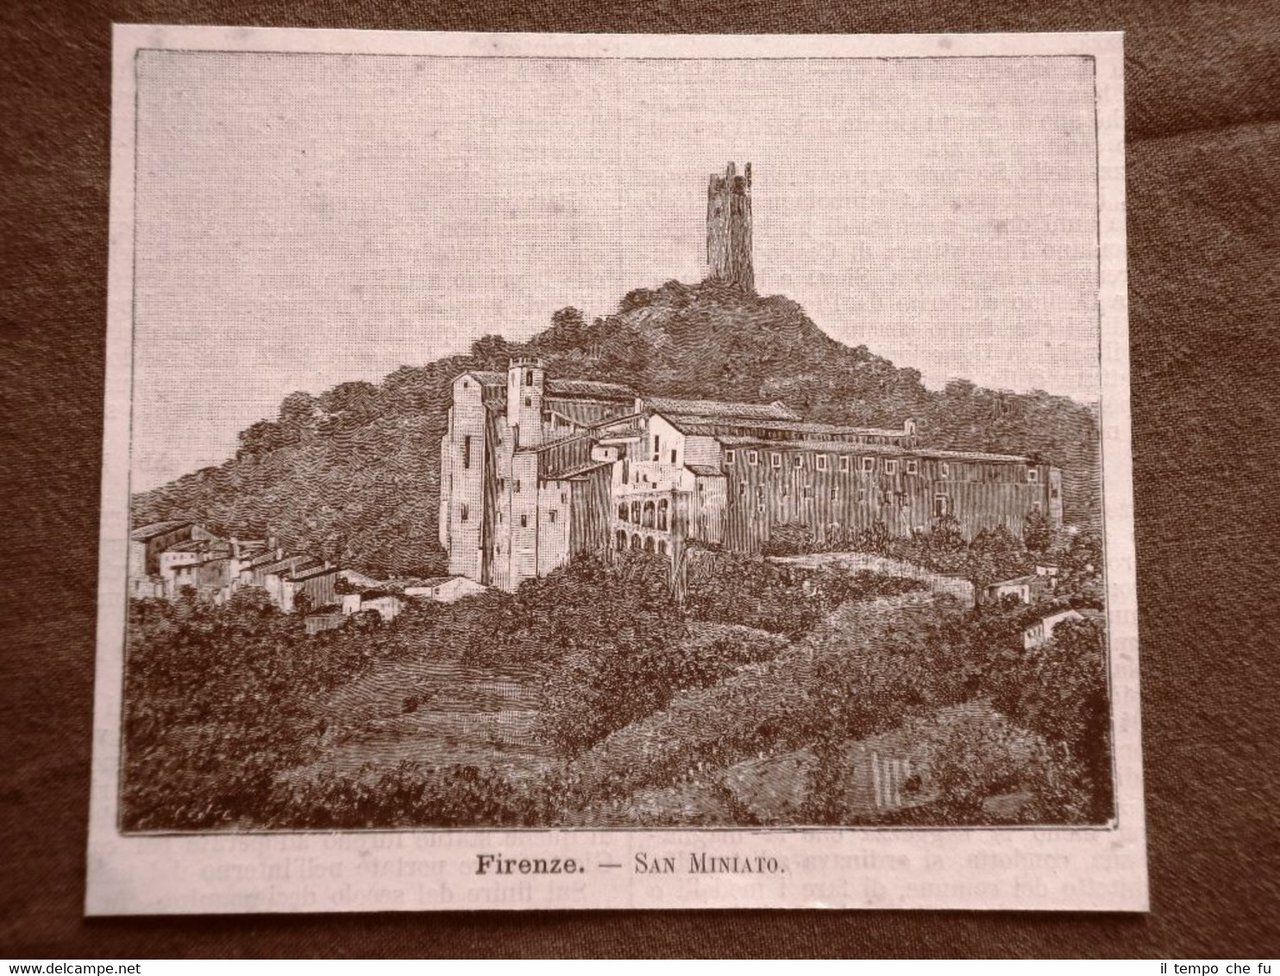 Incisione del 1891 Firenze, San Miniato - Toscana